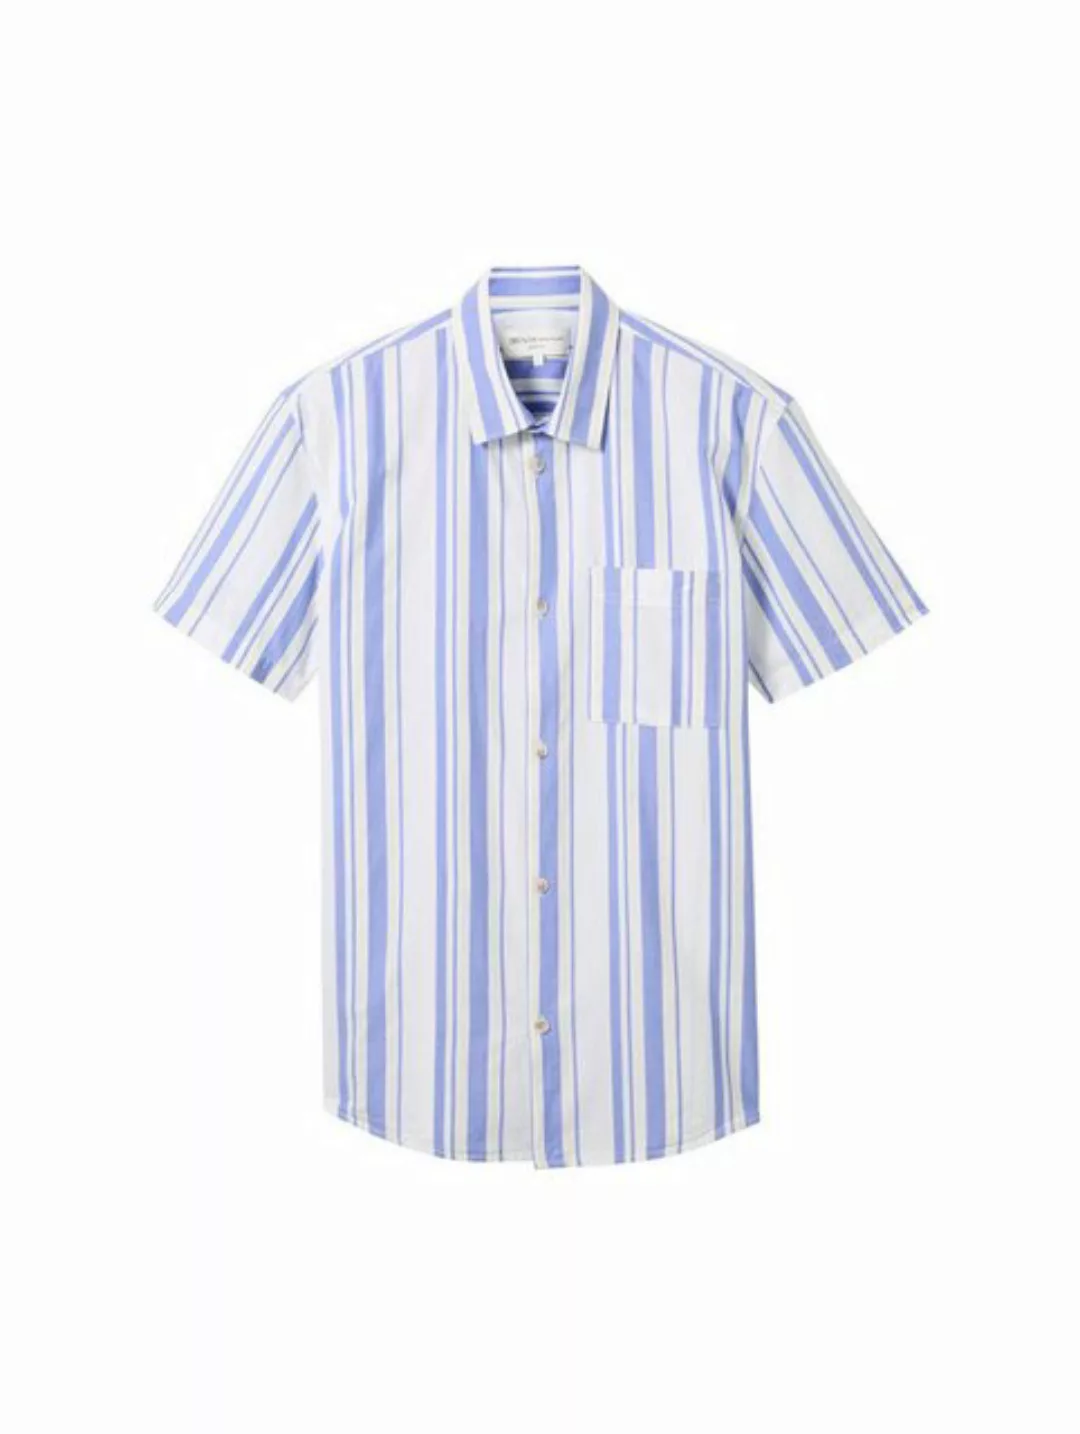 TOM TAILOR Denim T-Shirt striped shirt günstig online kaufen